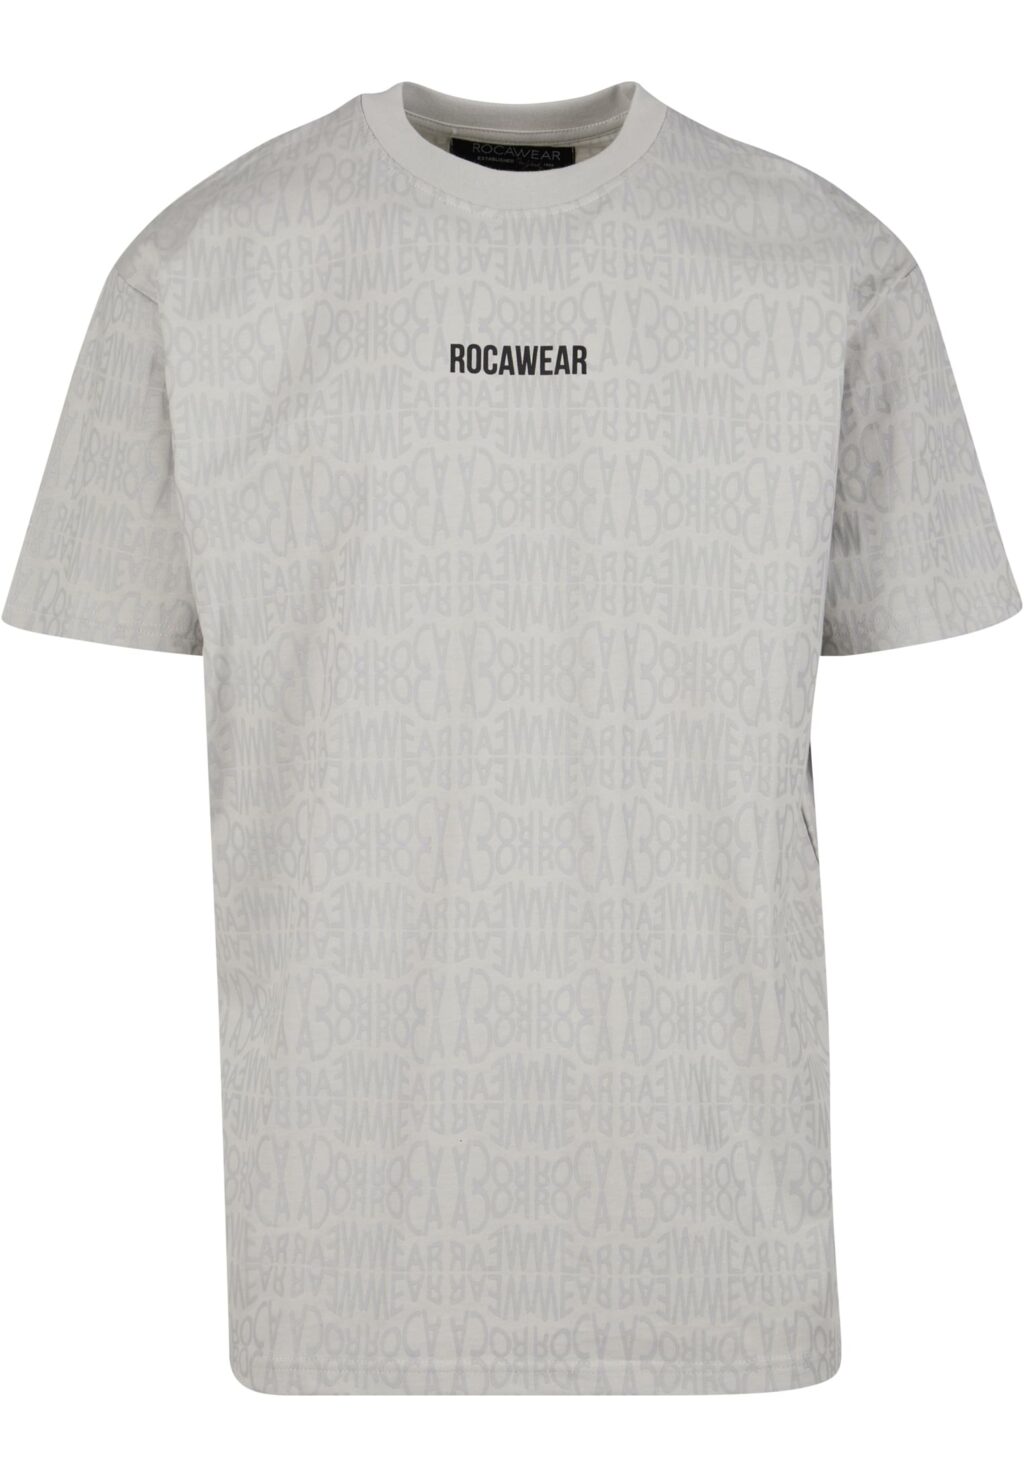 Rocawear Tshirt Roca grey RWTS095